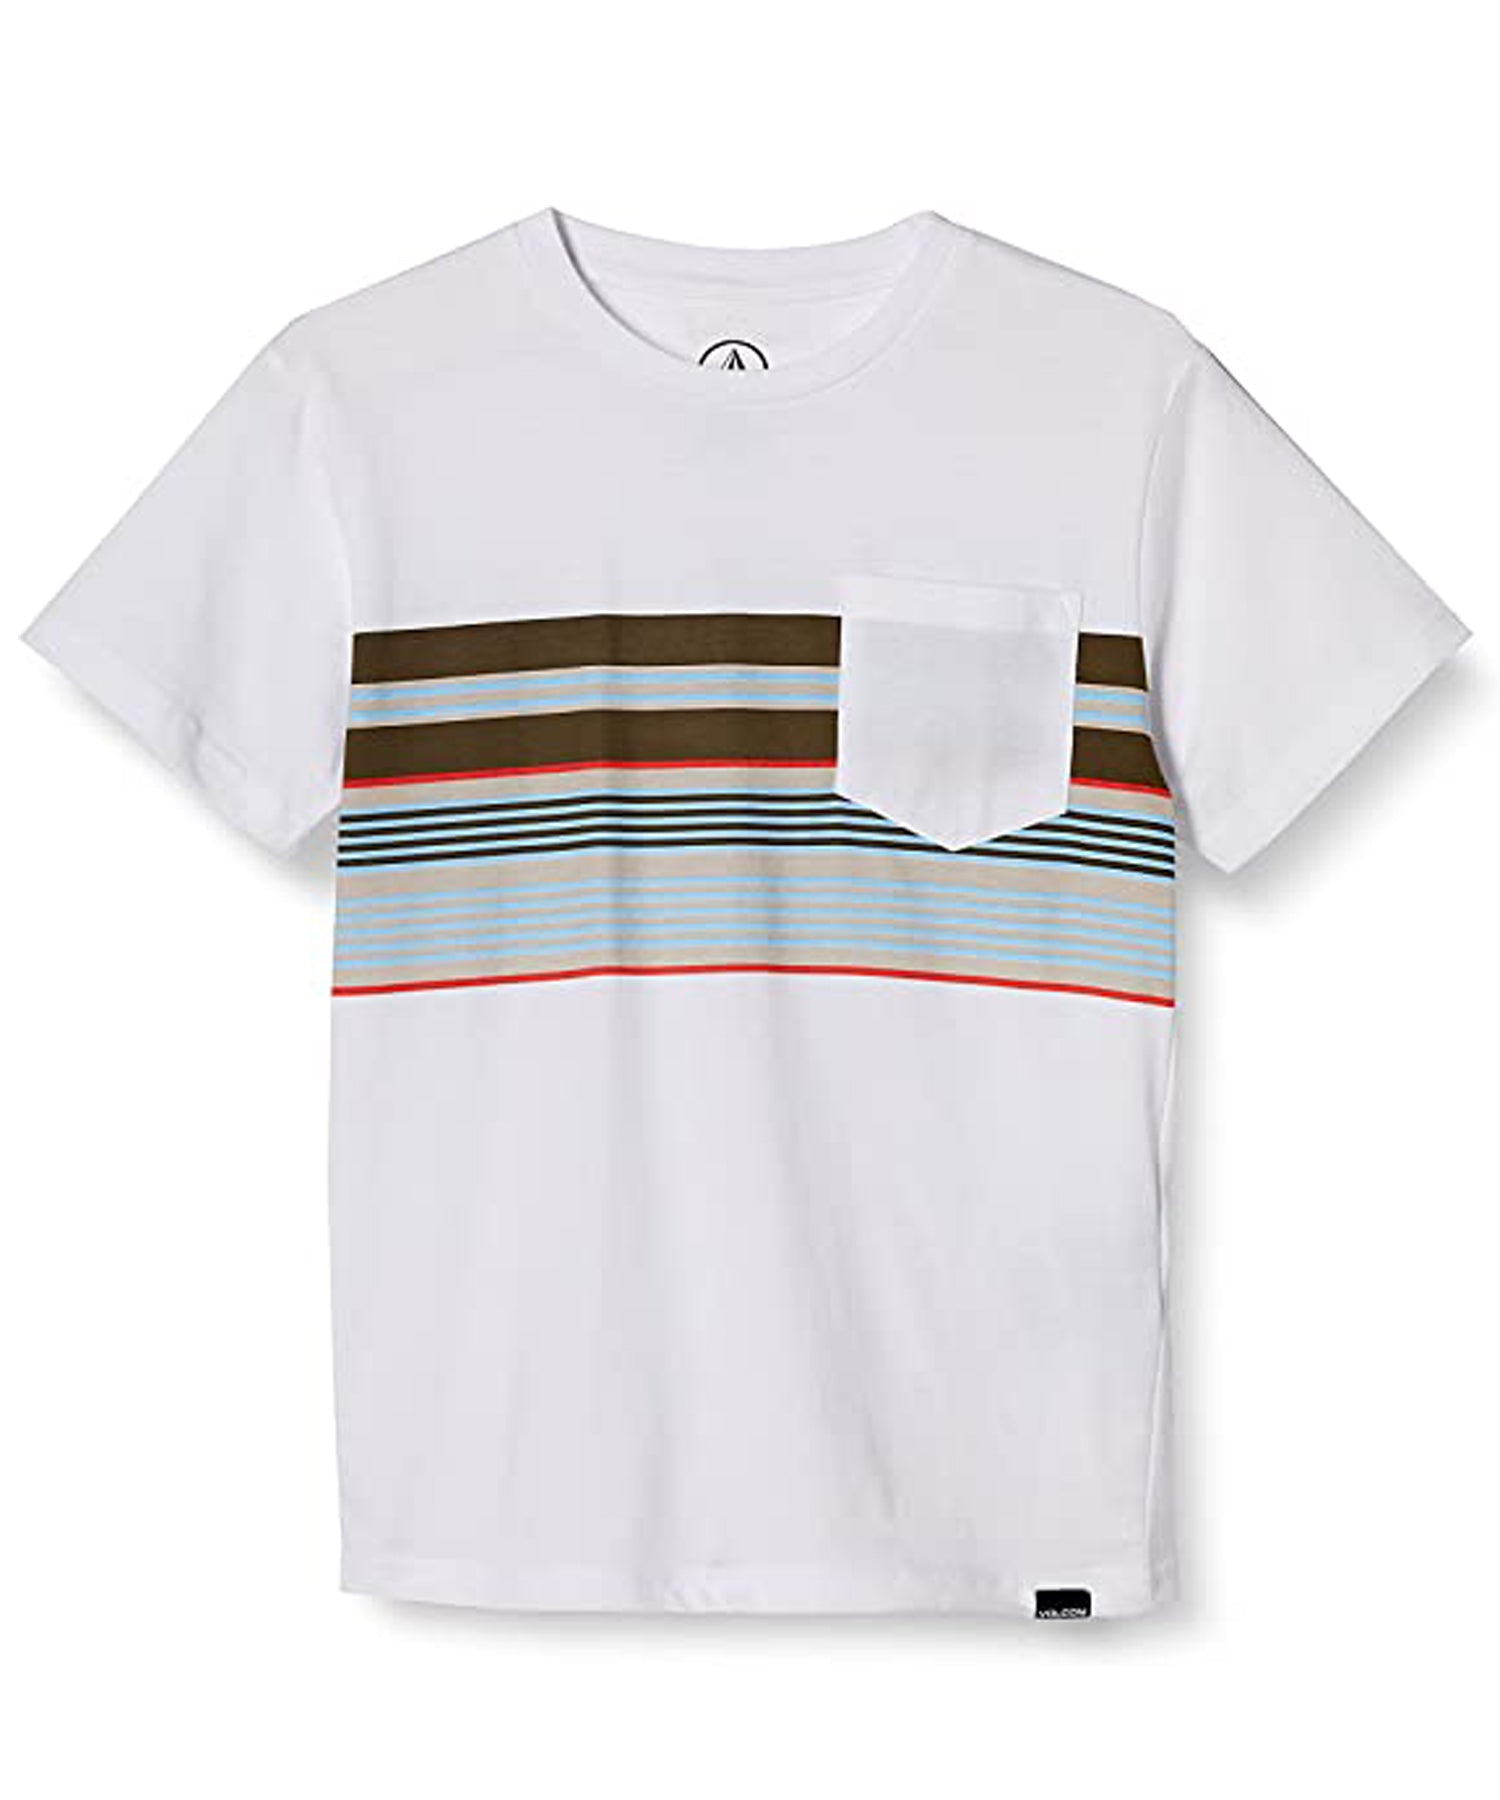 volcom-line stack-camiseta para niño/a-color blanco-cuello redondo-algodón orgánico-serigrafía a rayas de colores en todo el pecho.